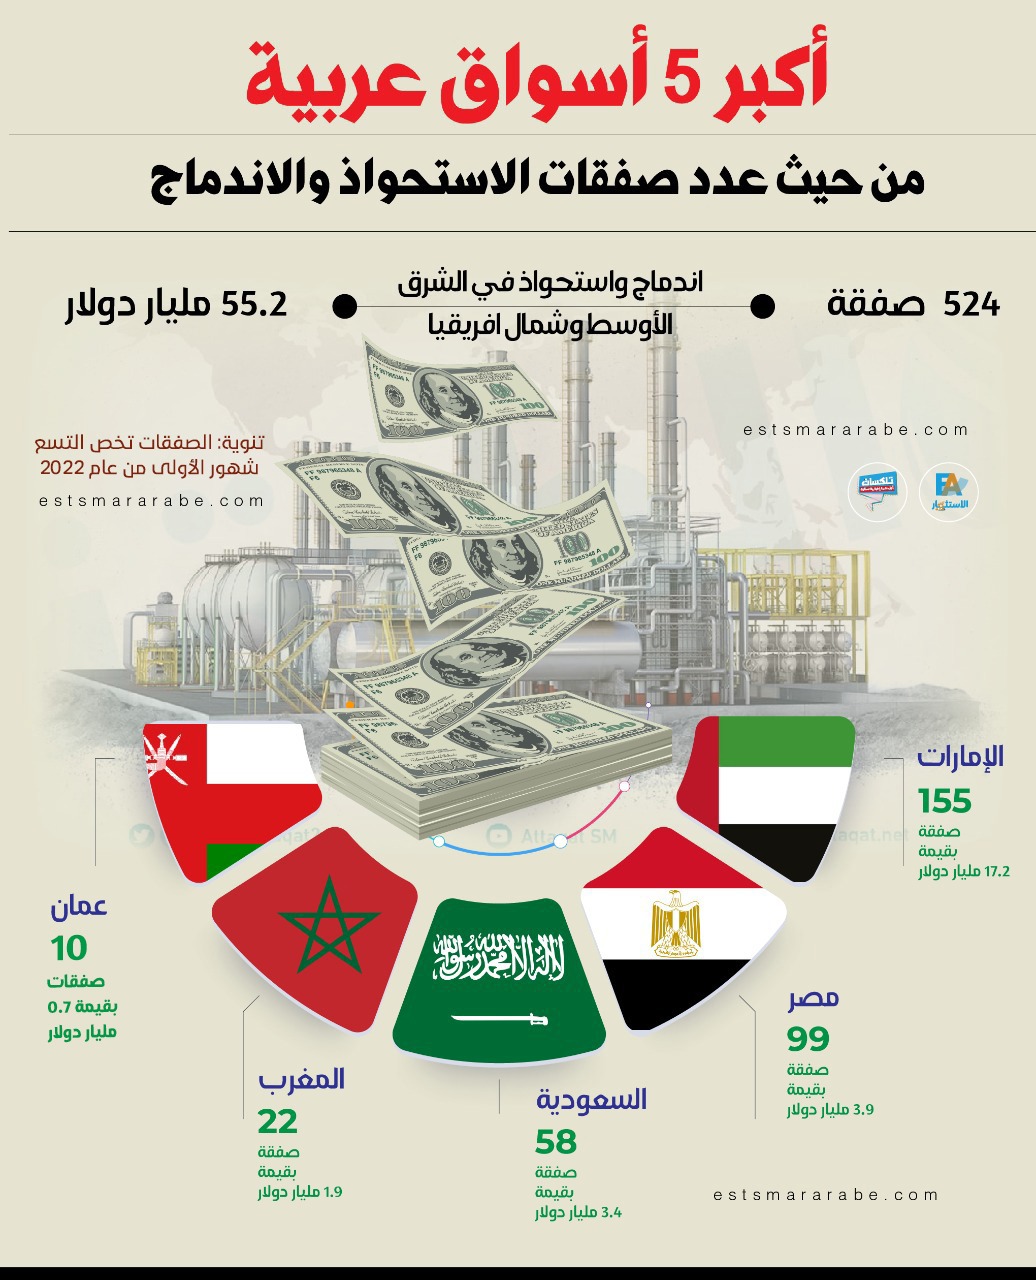 إنفوجرافيك|| أكبر 5 صفقات عربية تمت خلال الـ 9 شهور الأولى لعام 2022